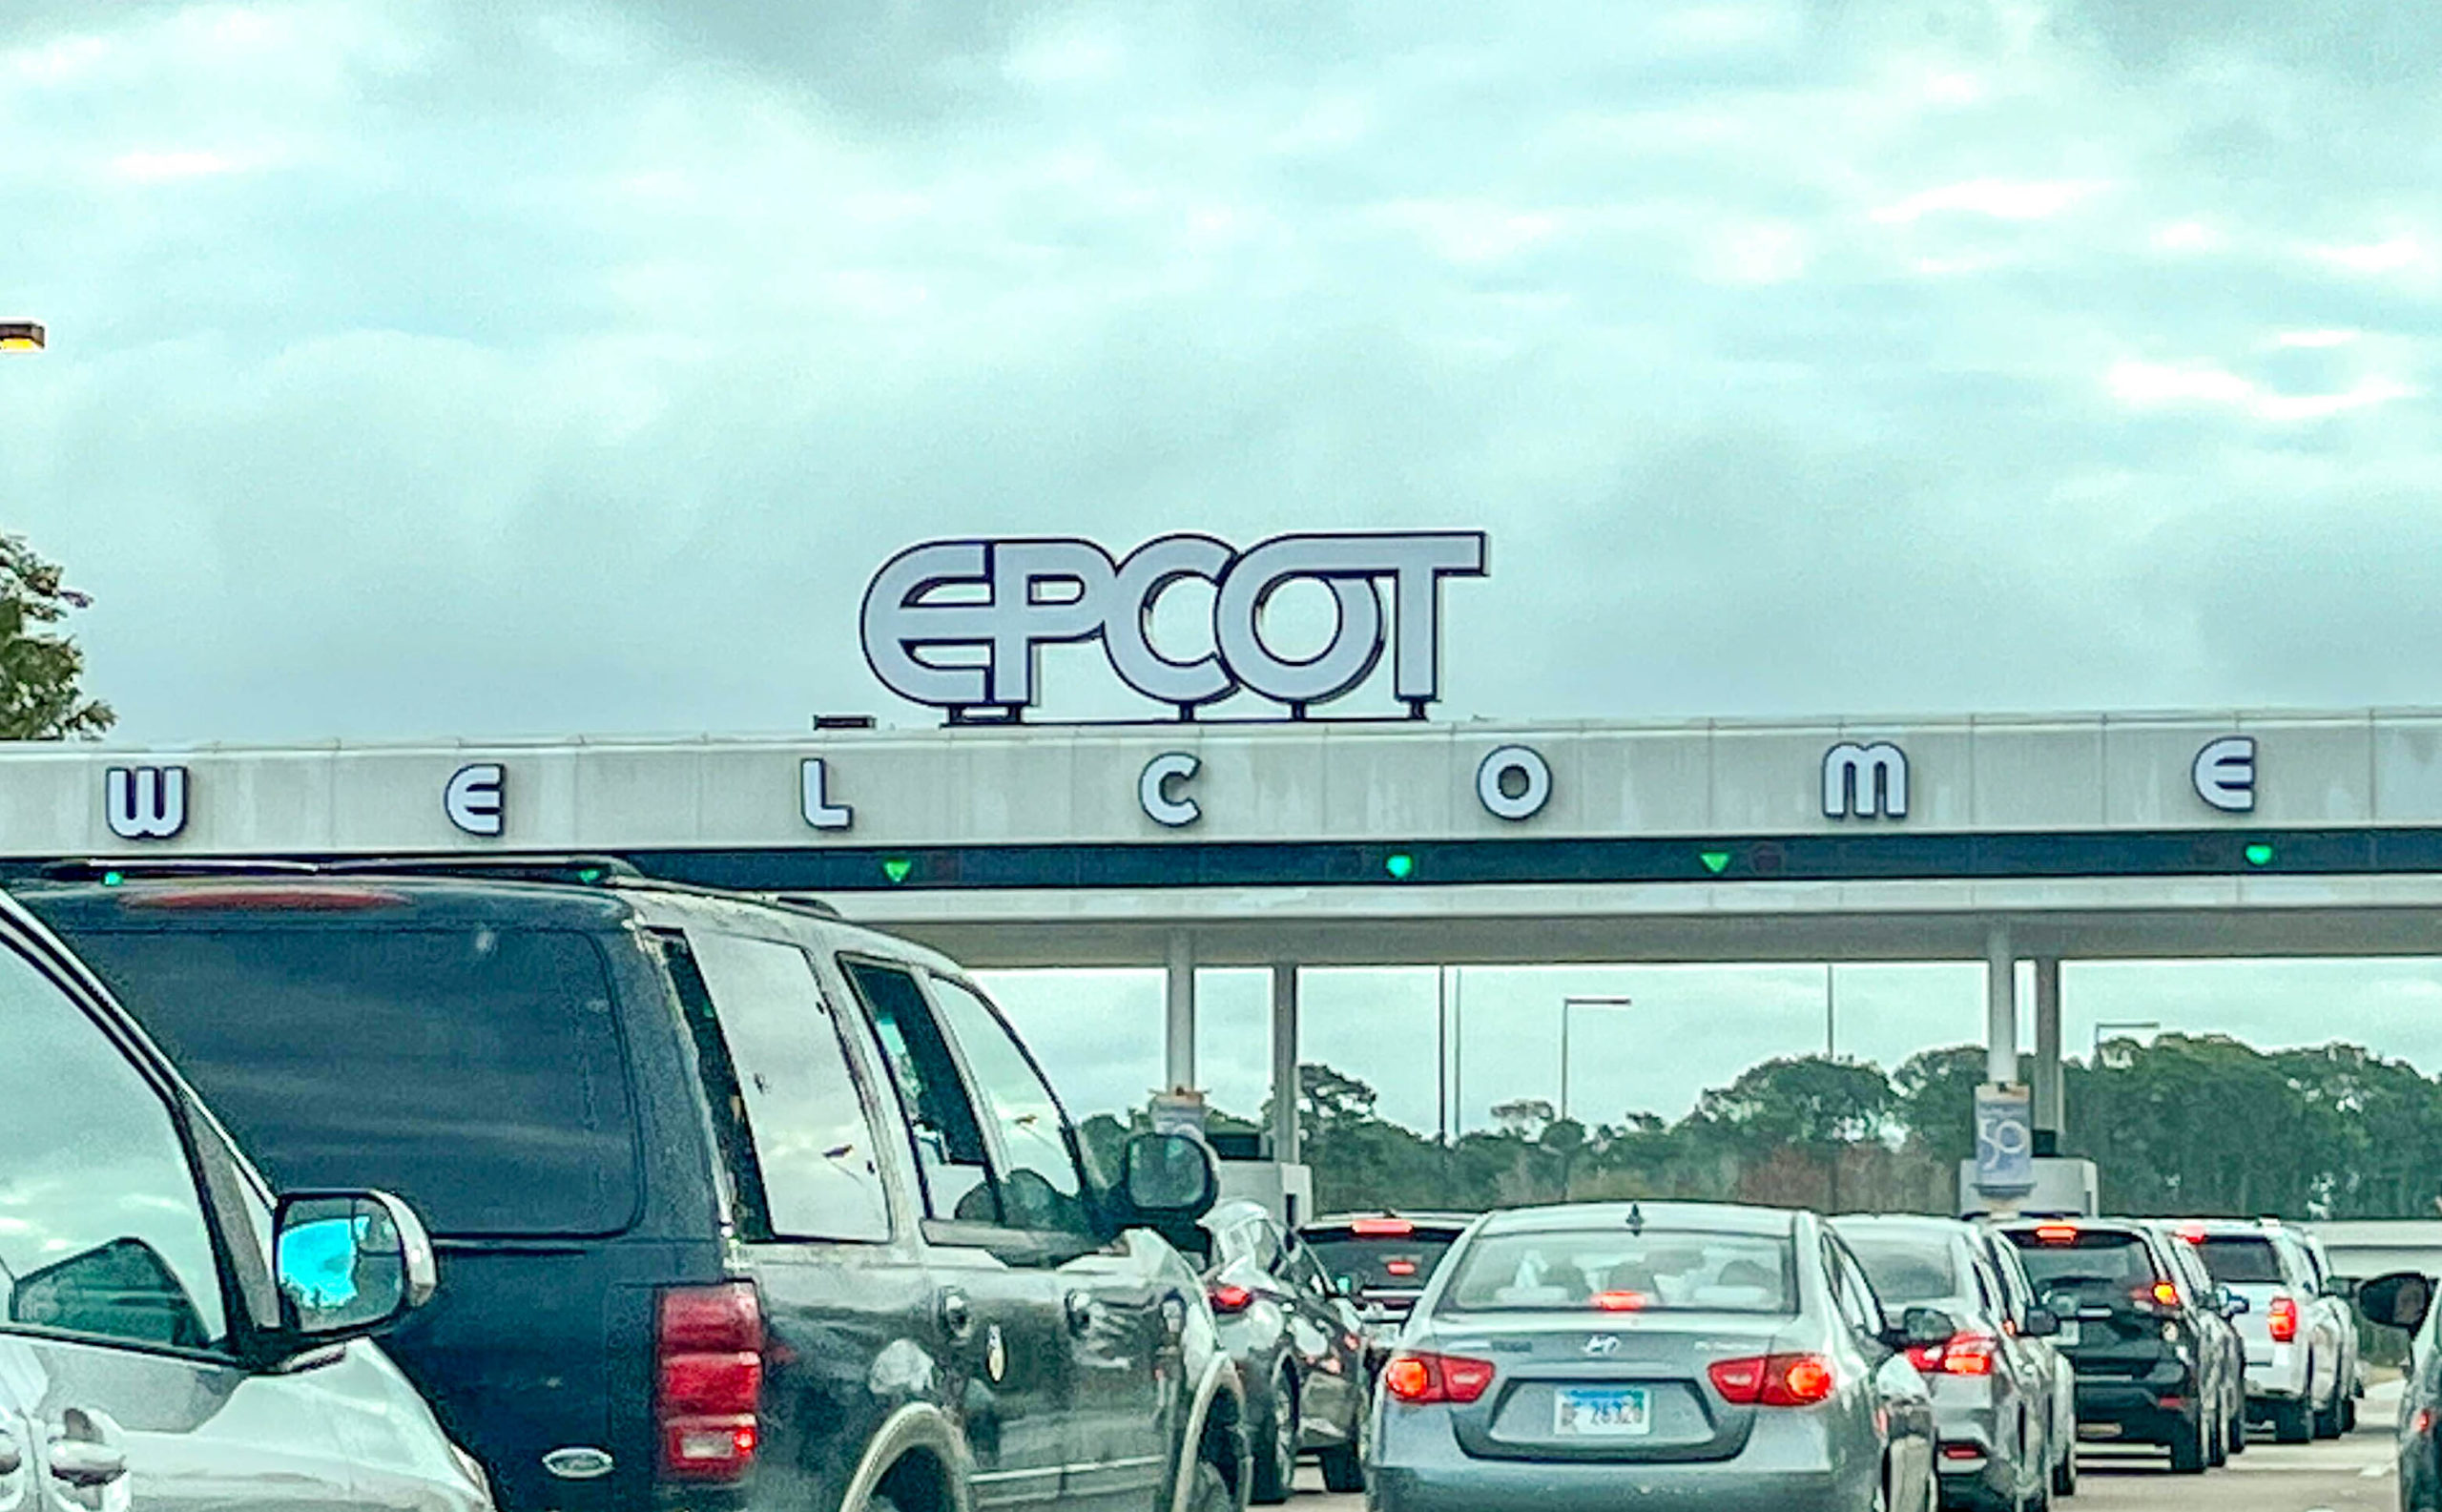 EPCOT toll plaza